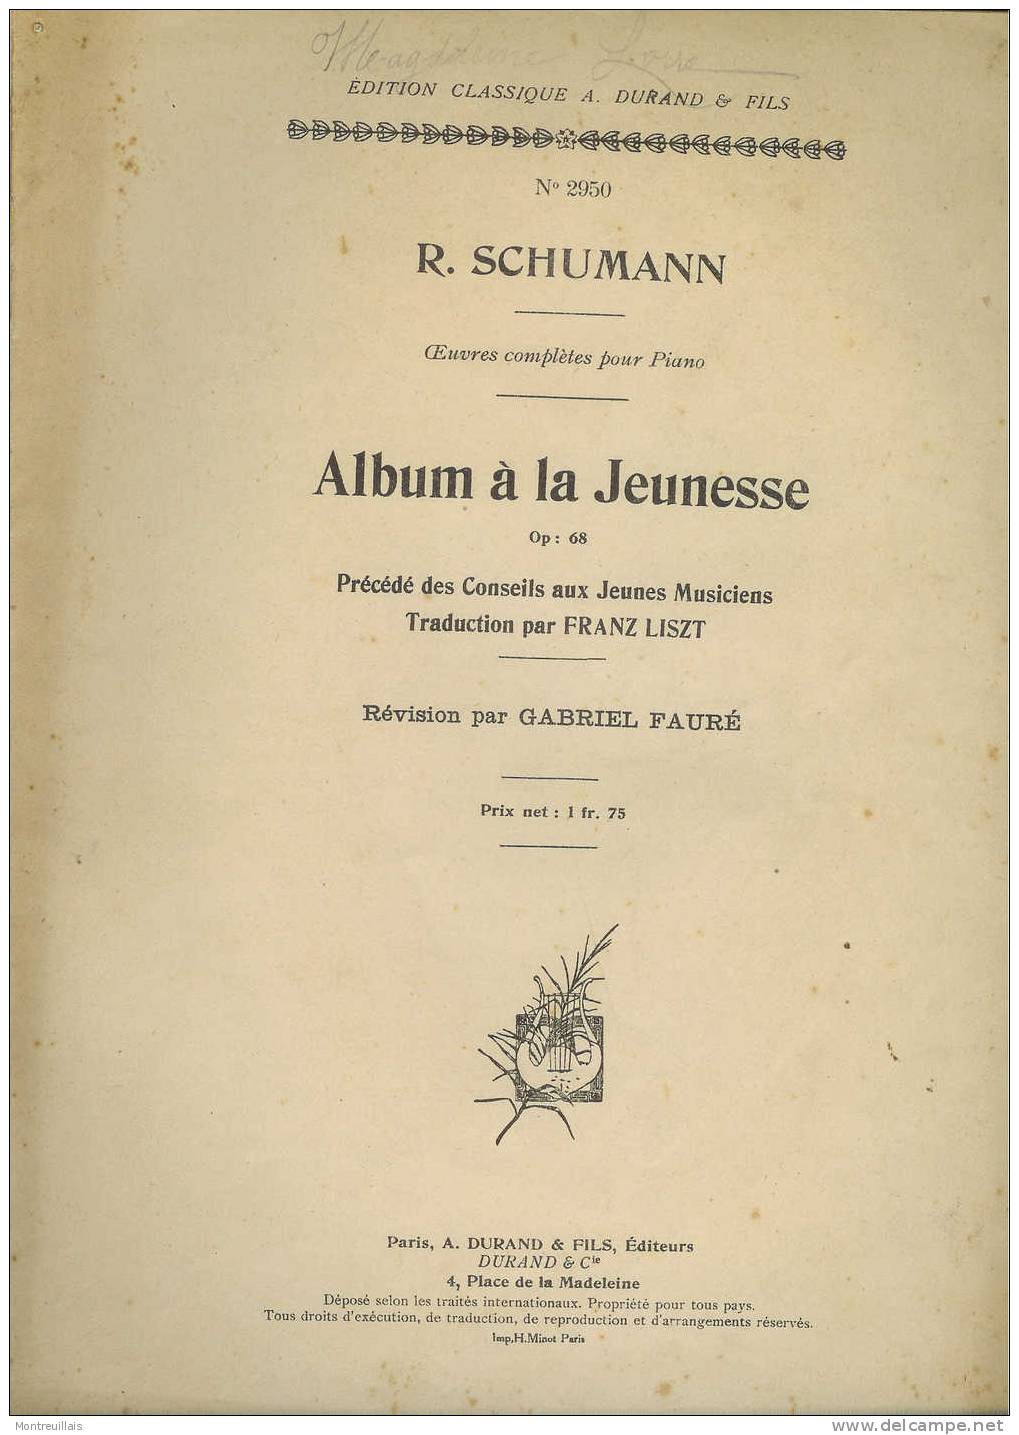 Album A La Jeunesse, Partition, Oeuvres Pour Piano, SCHUMANN, 62 Pages, N° 2950, Op 68 - Etude & Enseignement